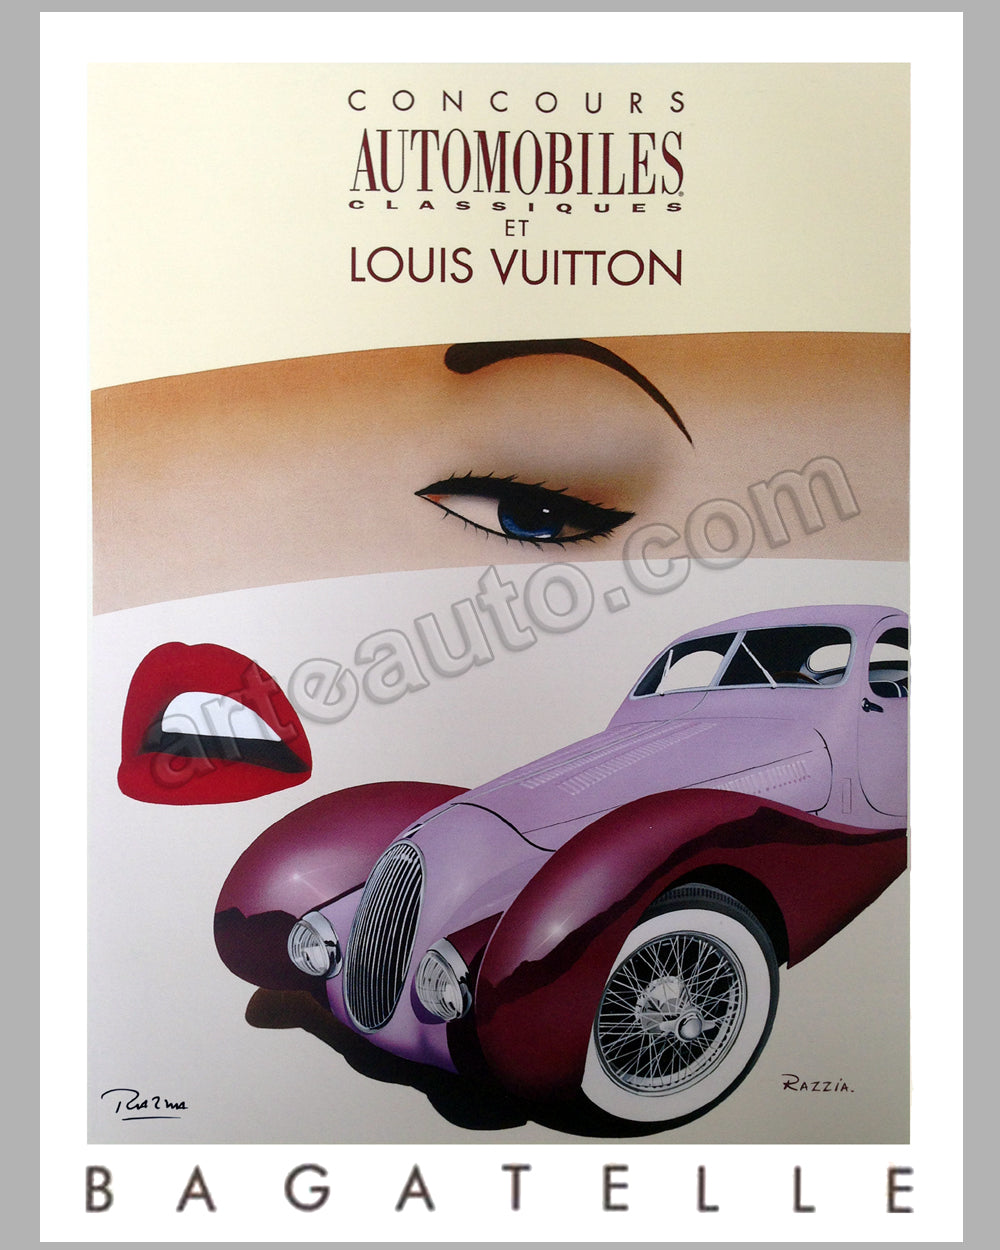 Louis Vuitton China Run 1998 large original poster by Razzia - l'art et  l'automobile